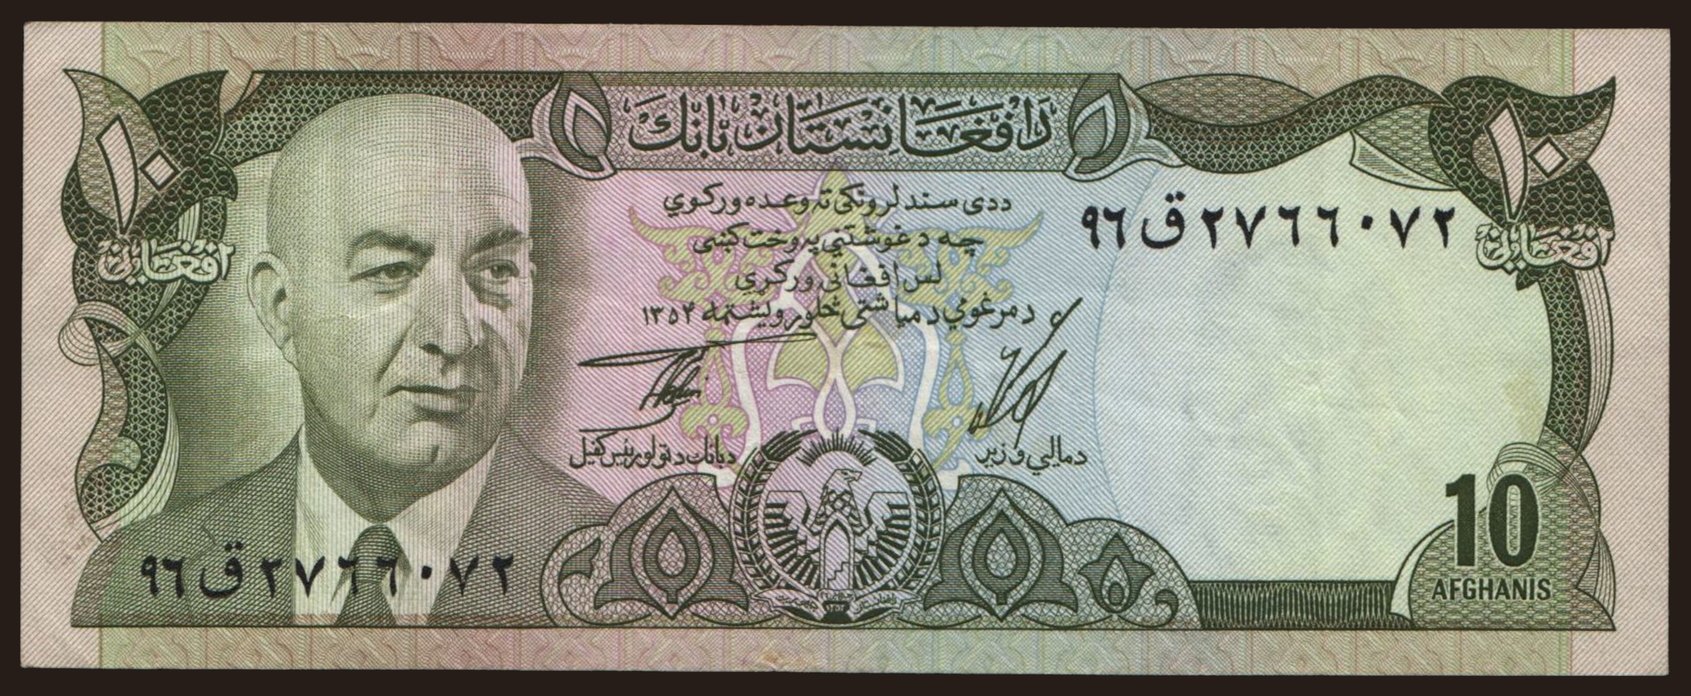 10 afghanis, 1975